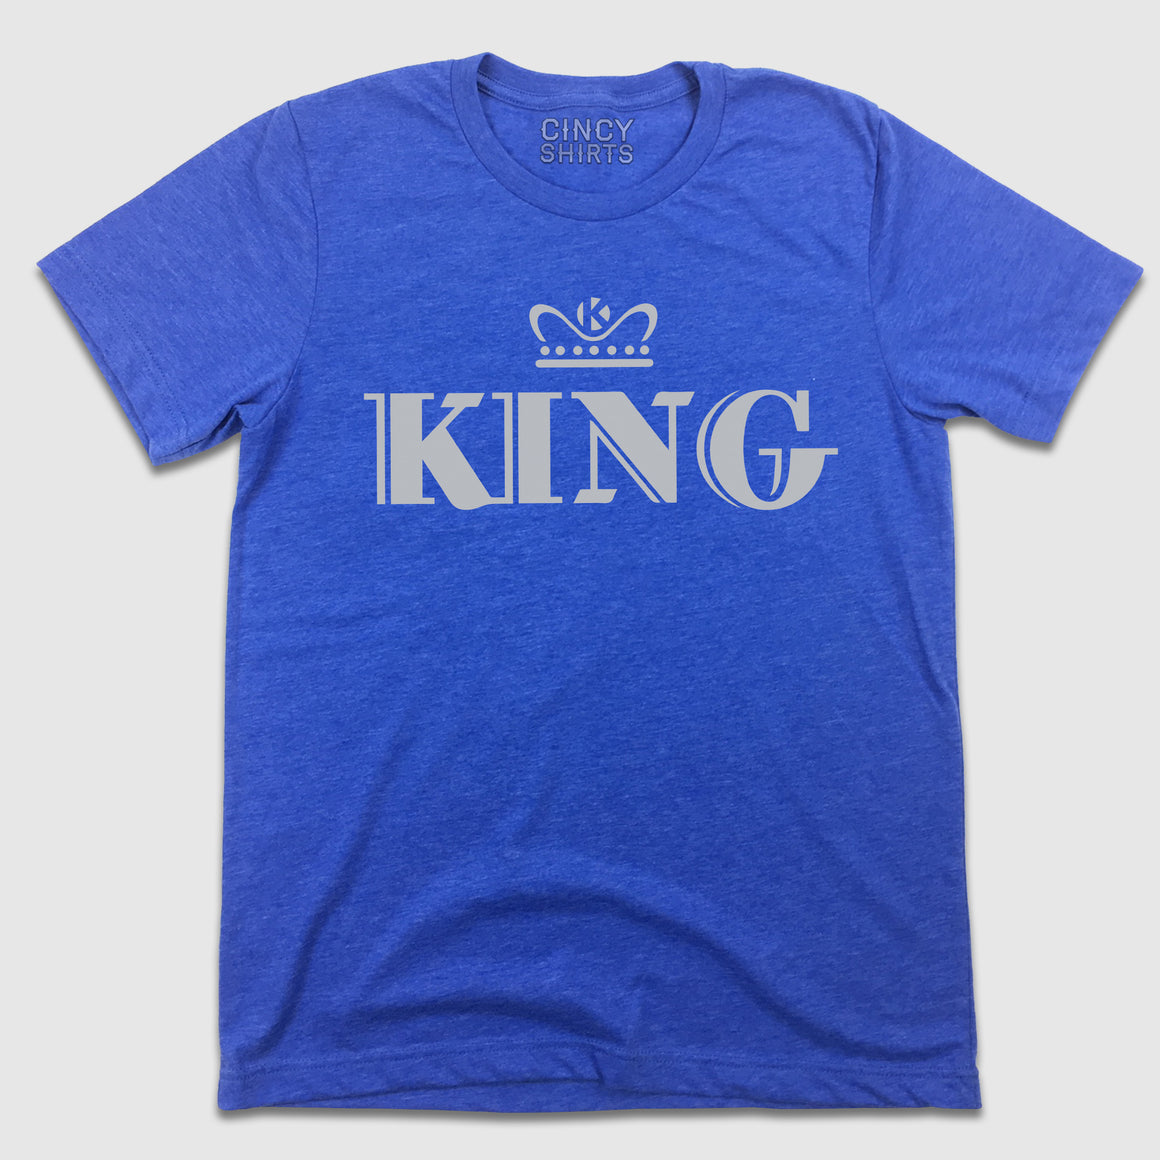 King Records - Cincy Shirts